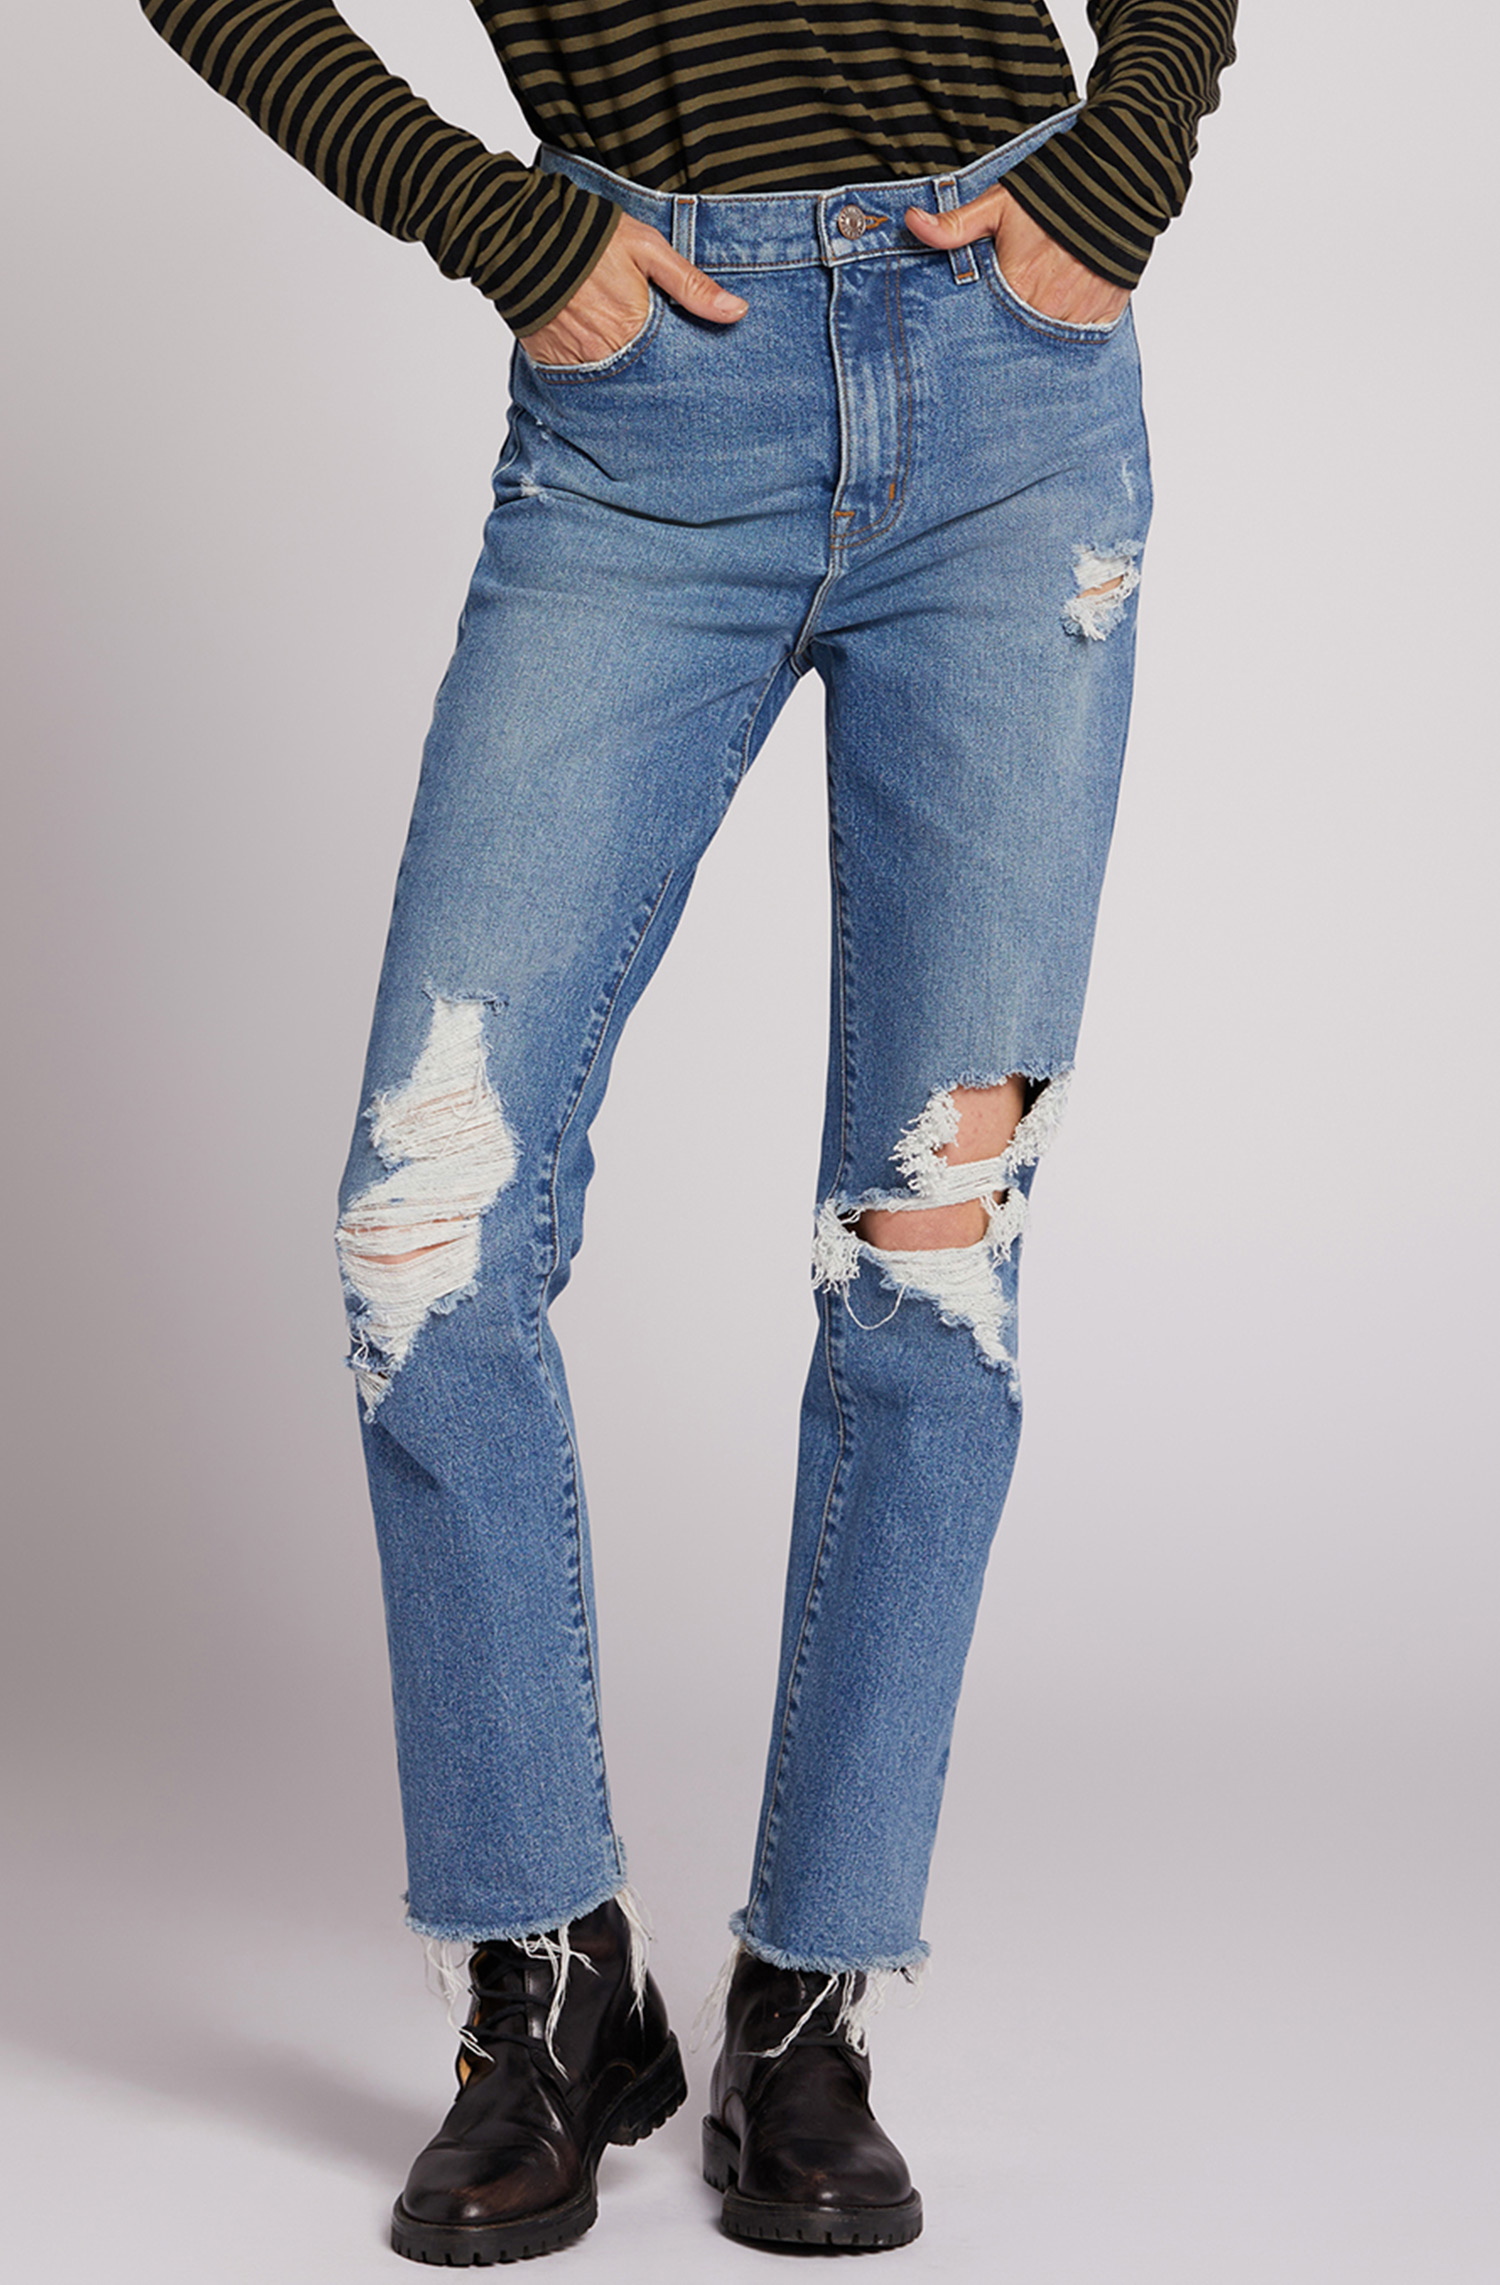 Women's Designer Jeans: Boyfriend, Skinny & More – CURRENT/ELLIOTT